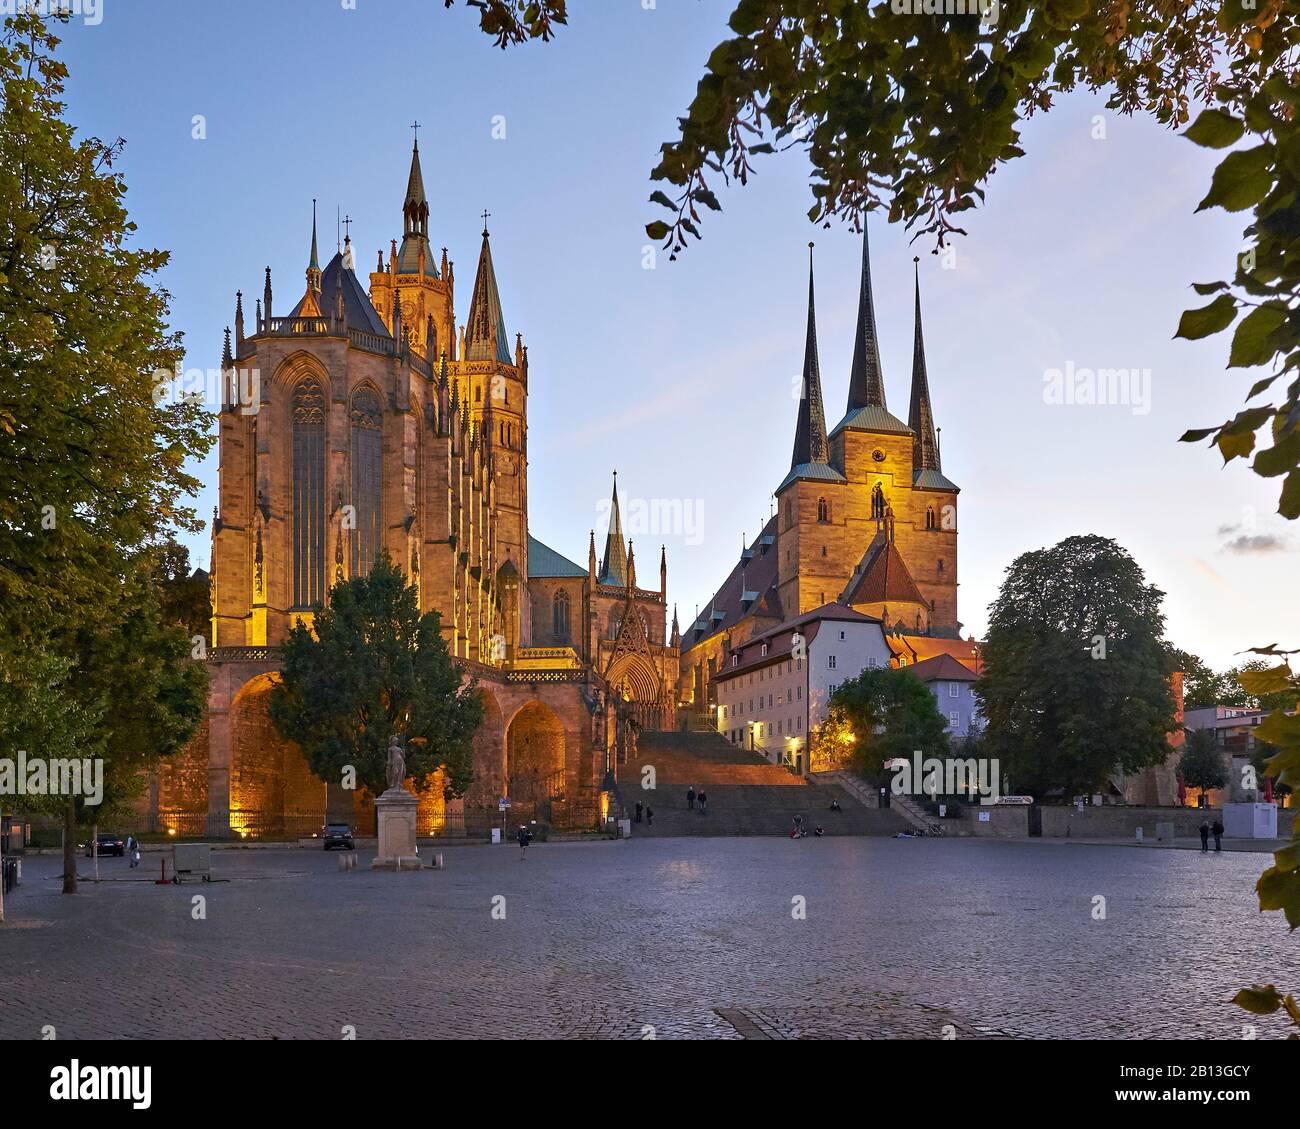 Catedral de Santa María y Iglesia de San Severo en la Plaza de la Catedral de Erfurt, Turingia, Alemania Foto de stock